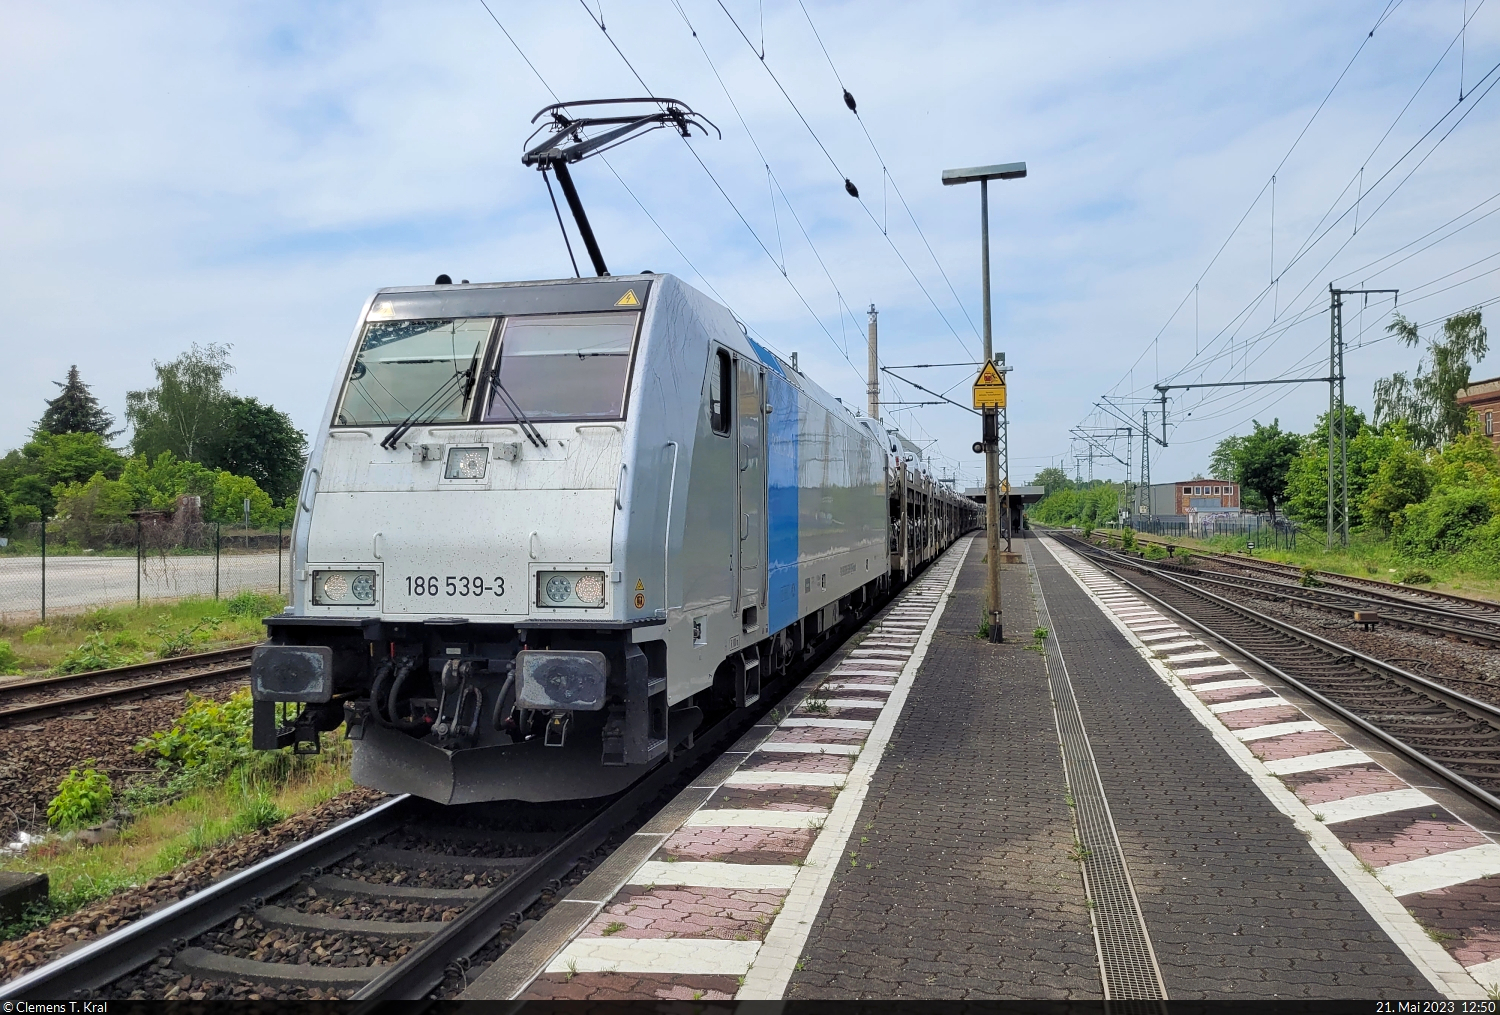 Autotransportzug (BLG Logistics Group AG & Co. KG) mit 186 539-3 durchfährt den Bahnhof Magdeburg-Sudenburg auf Gleis 2 in östlicher Richtung.

🧰 Railpool GmbH, vermietet an die HSL Logistik GmbH (HSL)
🕓 21.5.2023 | 12:50 Uhr